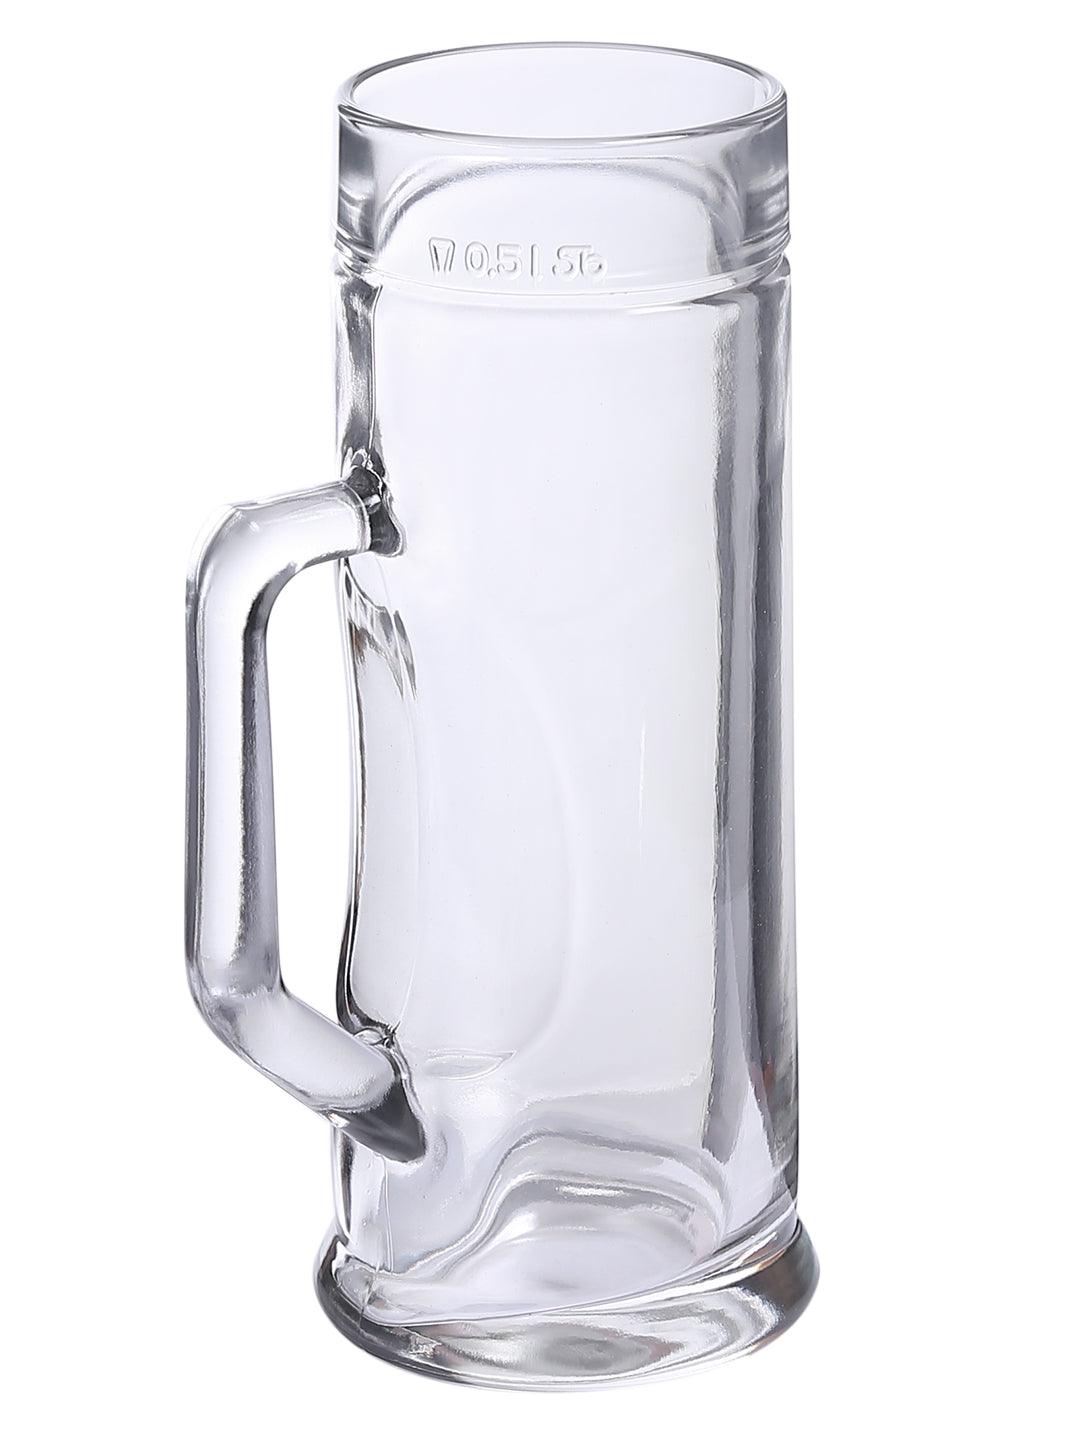 Oberglas Premium Plain Beer Mug 550 ML Set of 2 pcs | Beer Mug